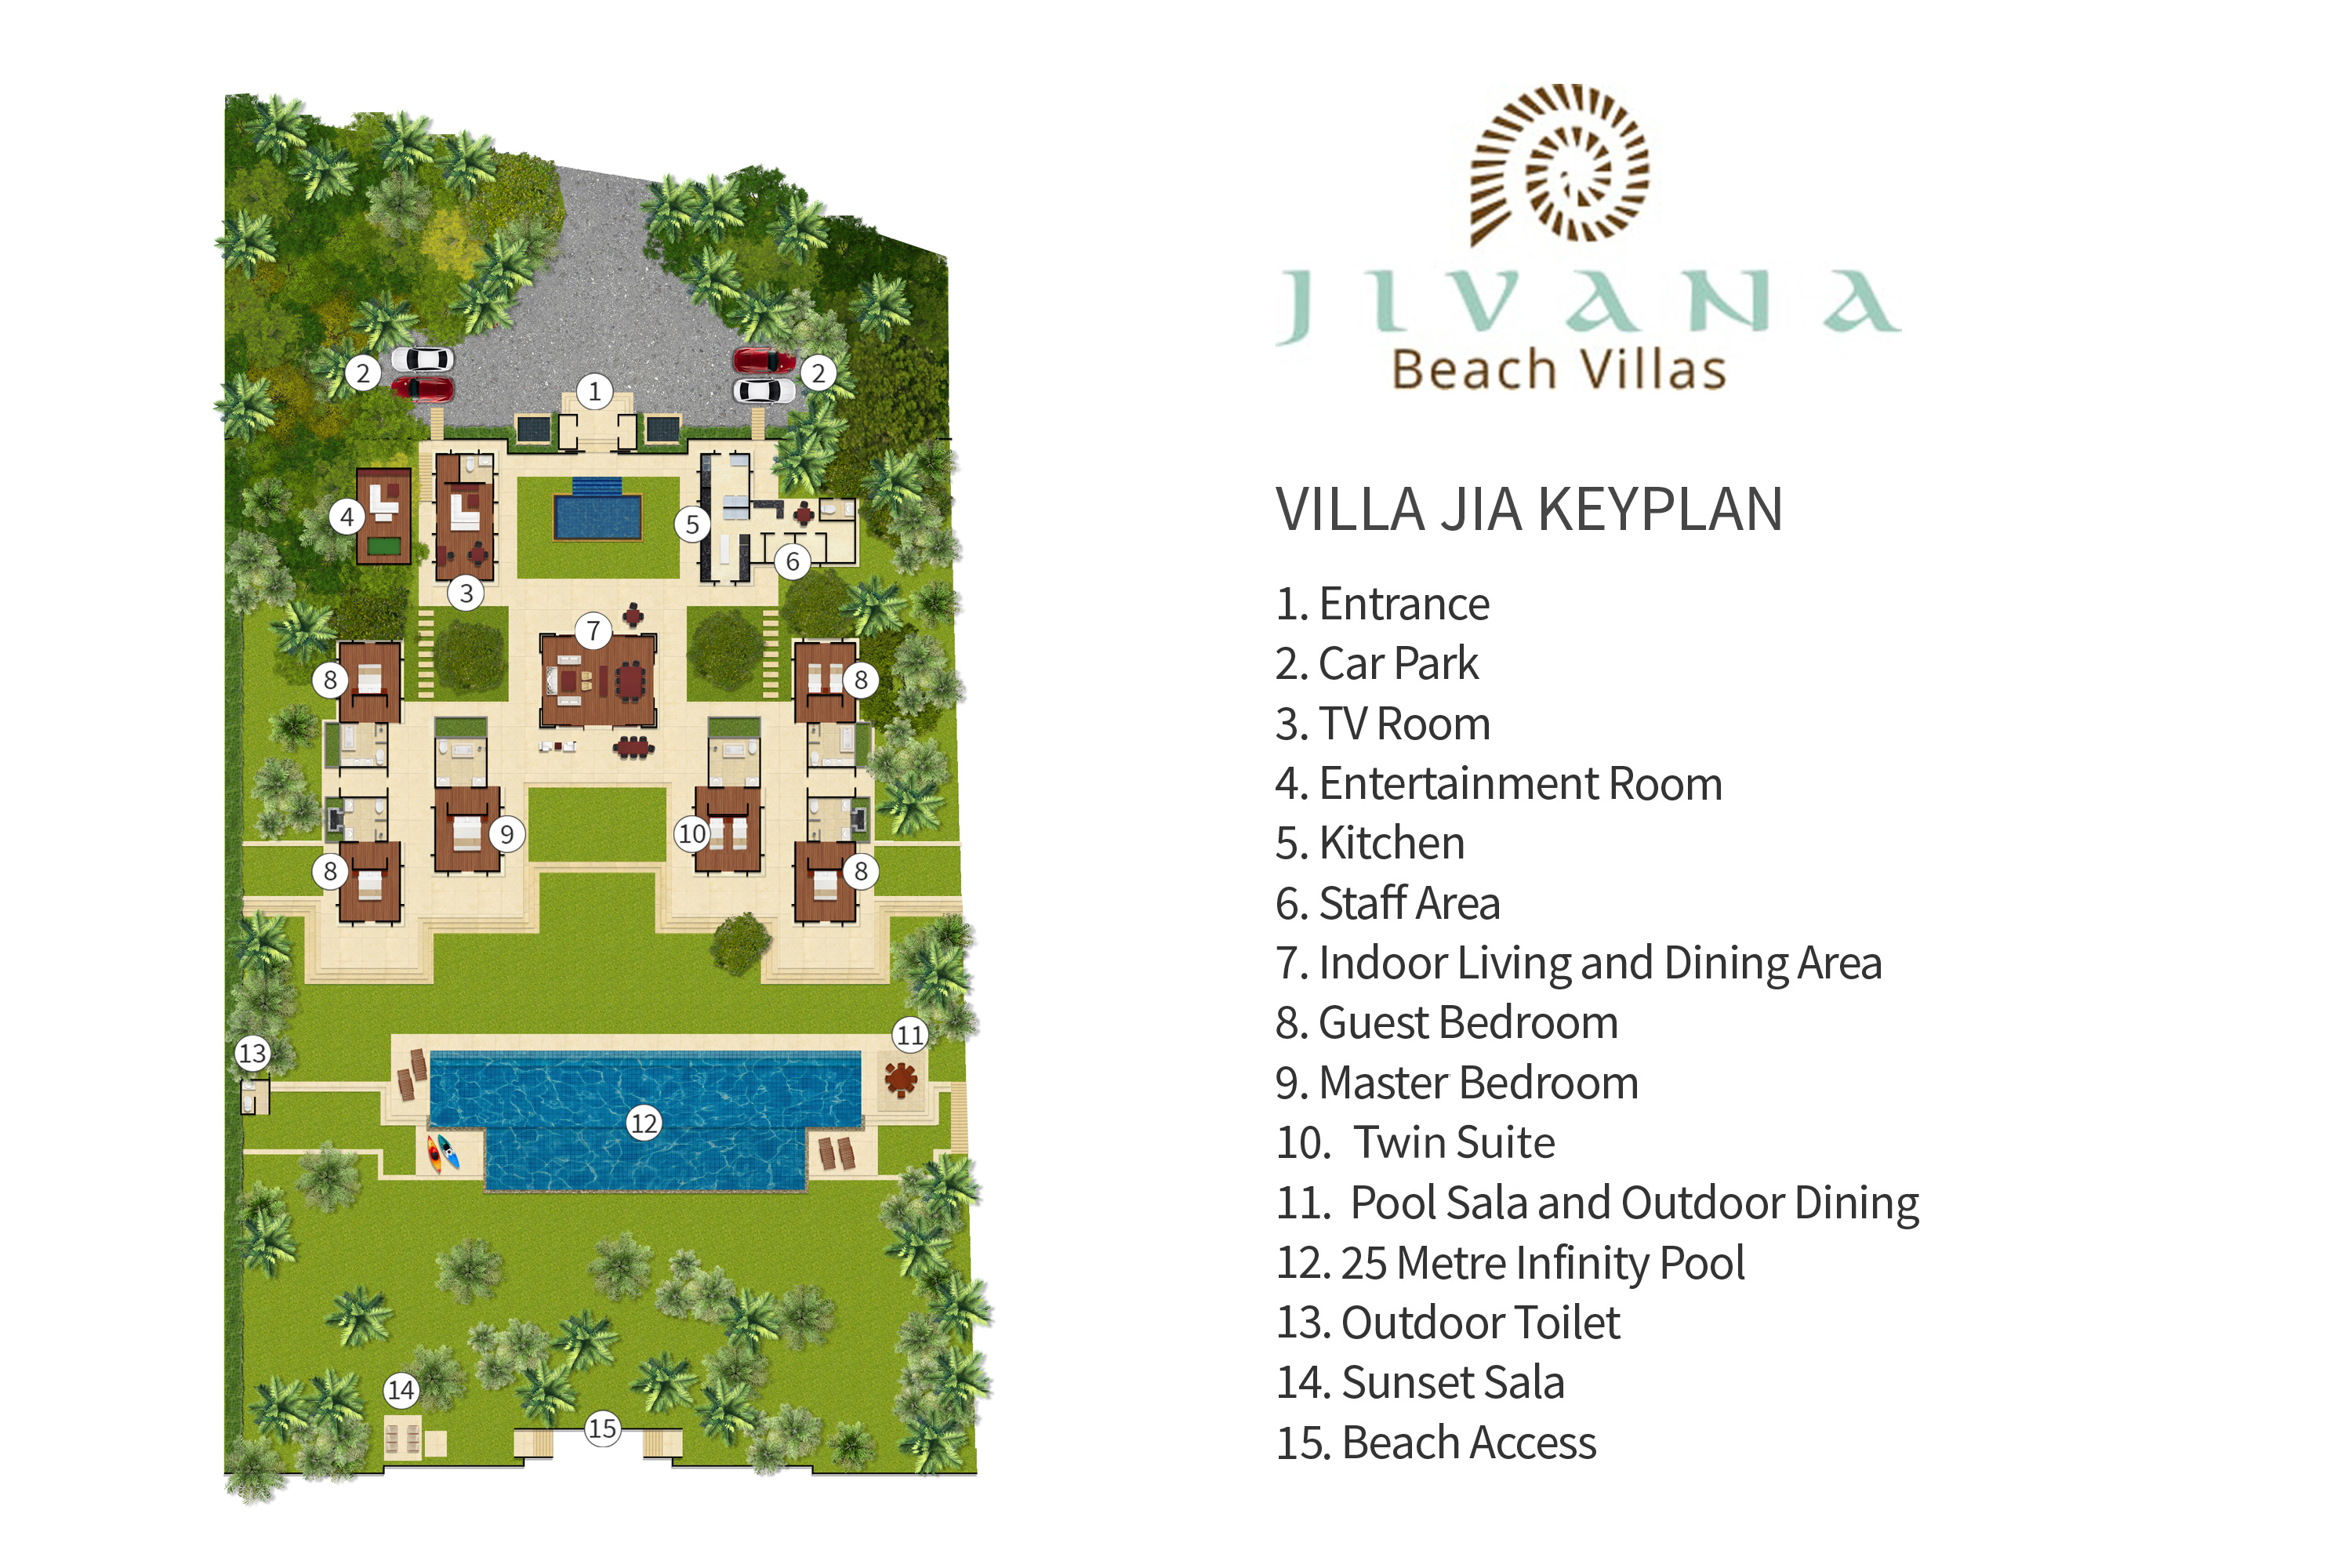 Jivana Beach Villas - Villa Jia